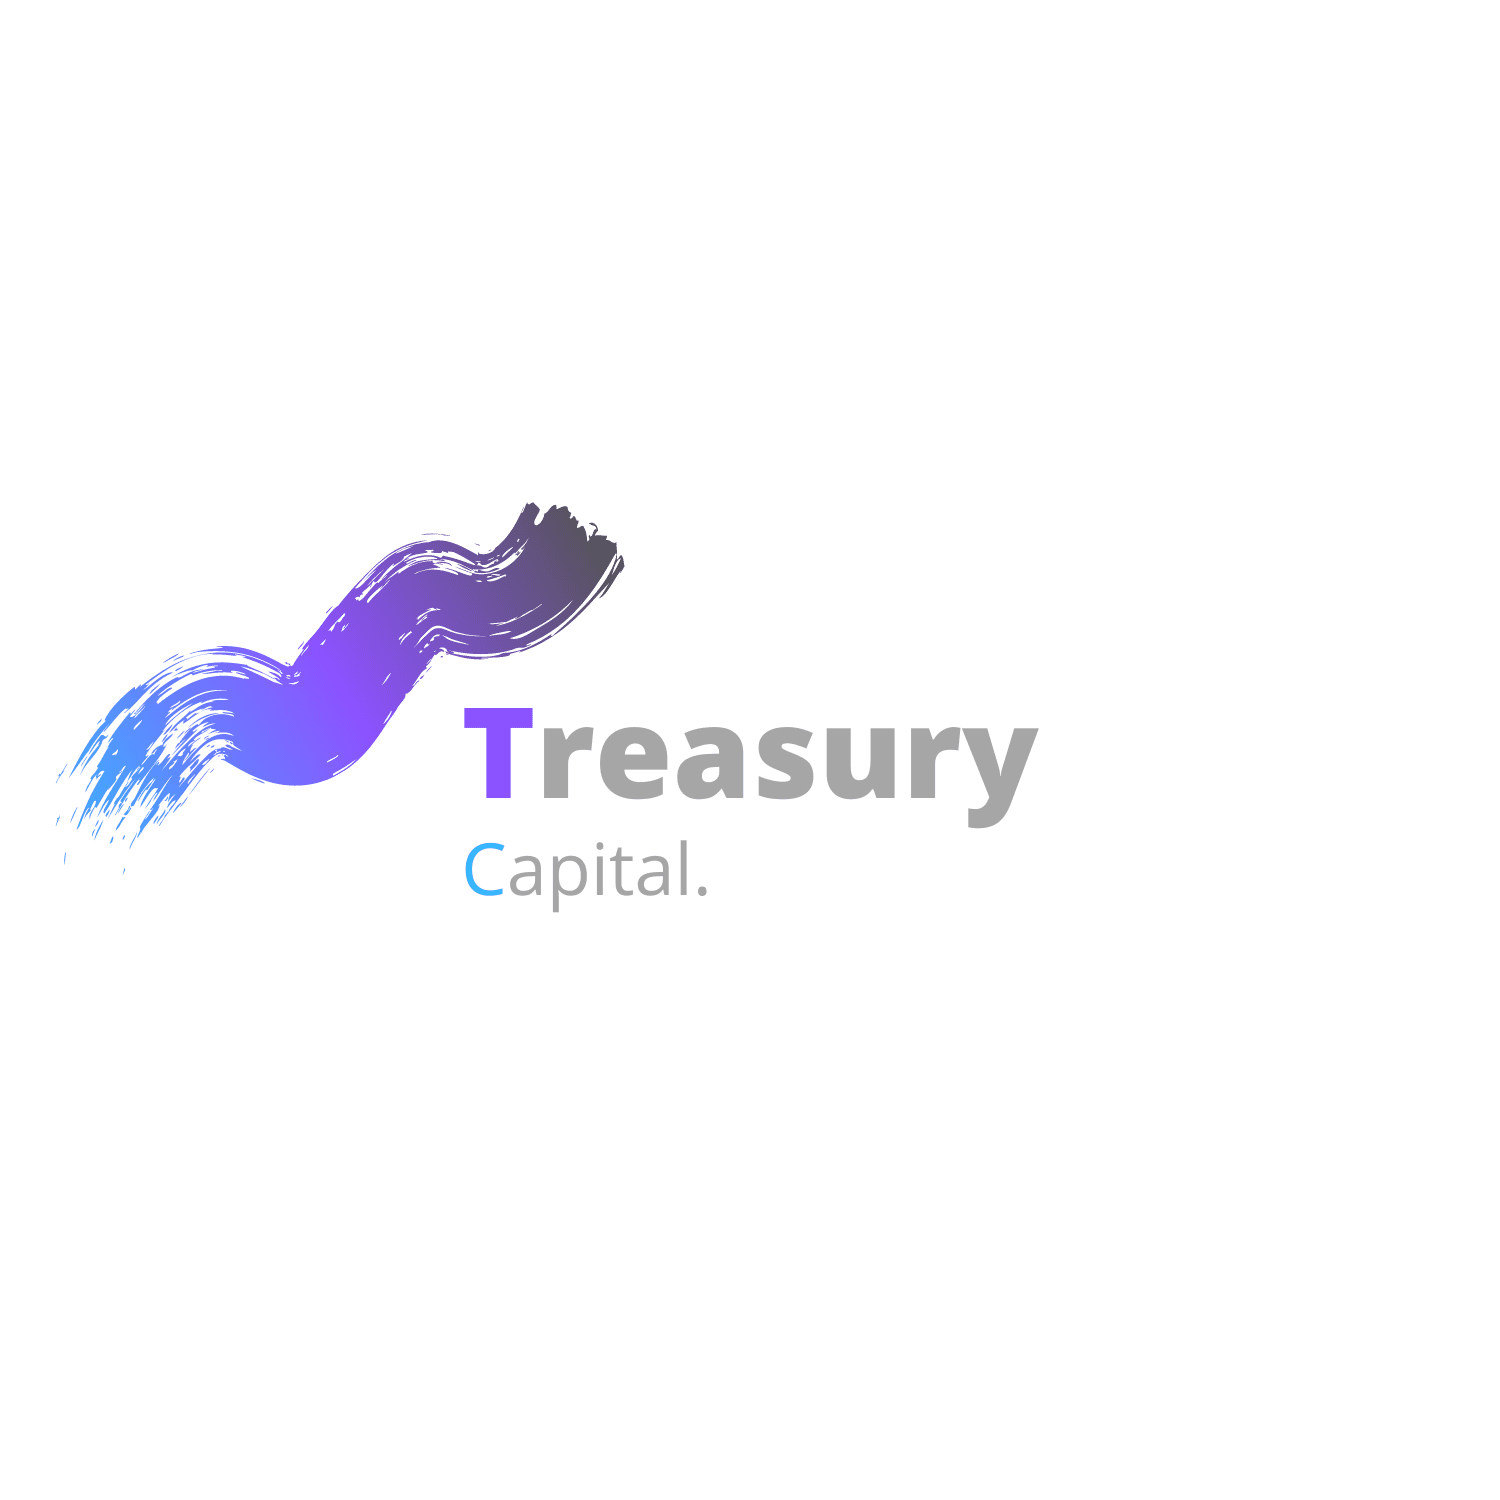 Treasury Capital